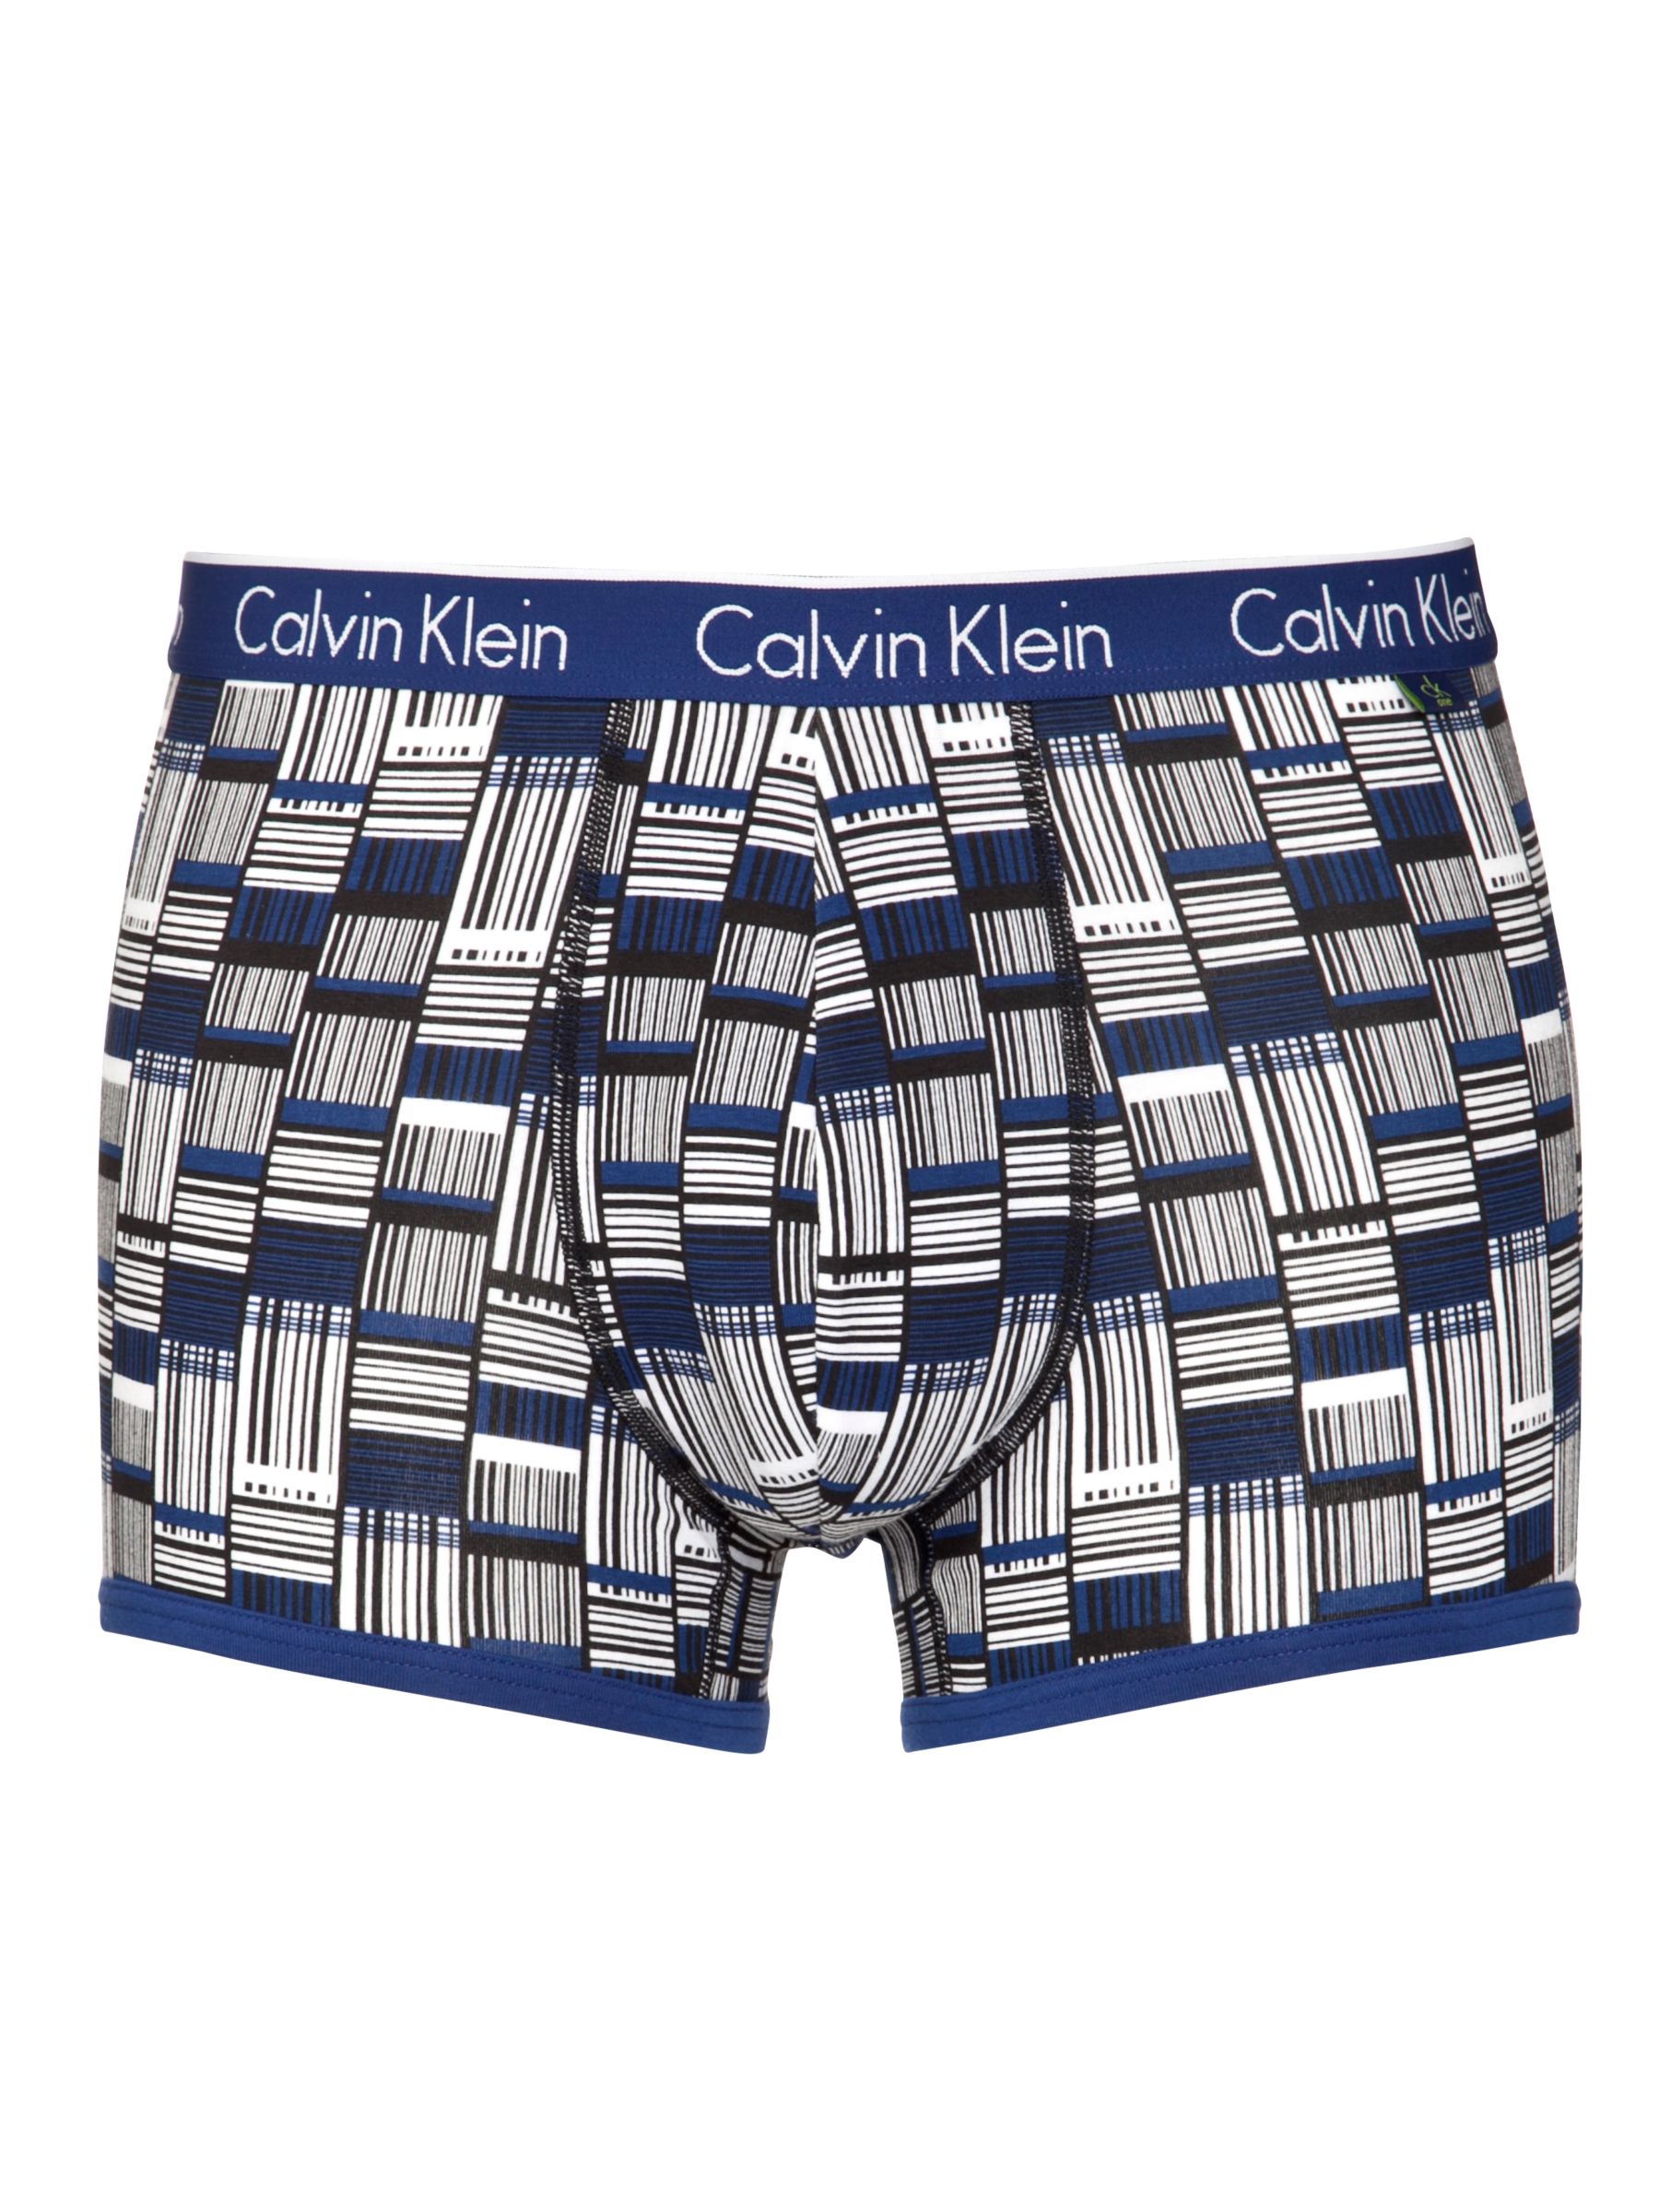 calvin klein printed underwear